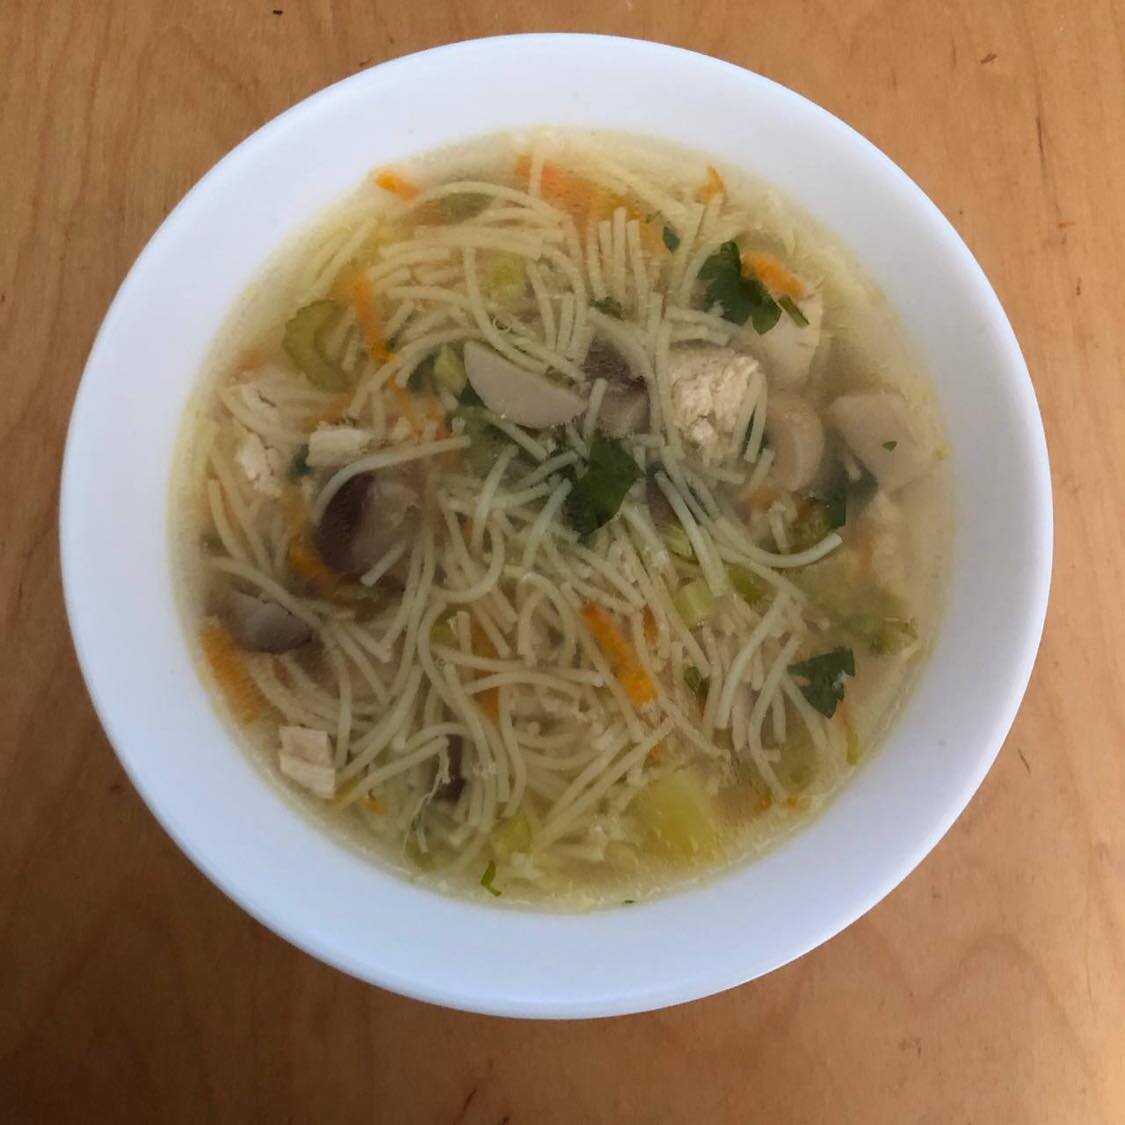 2. Куриный суп с картошкой и чесноком